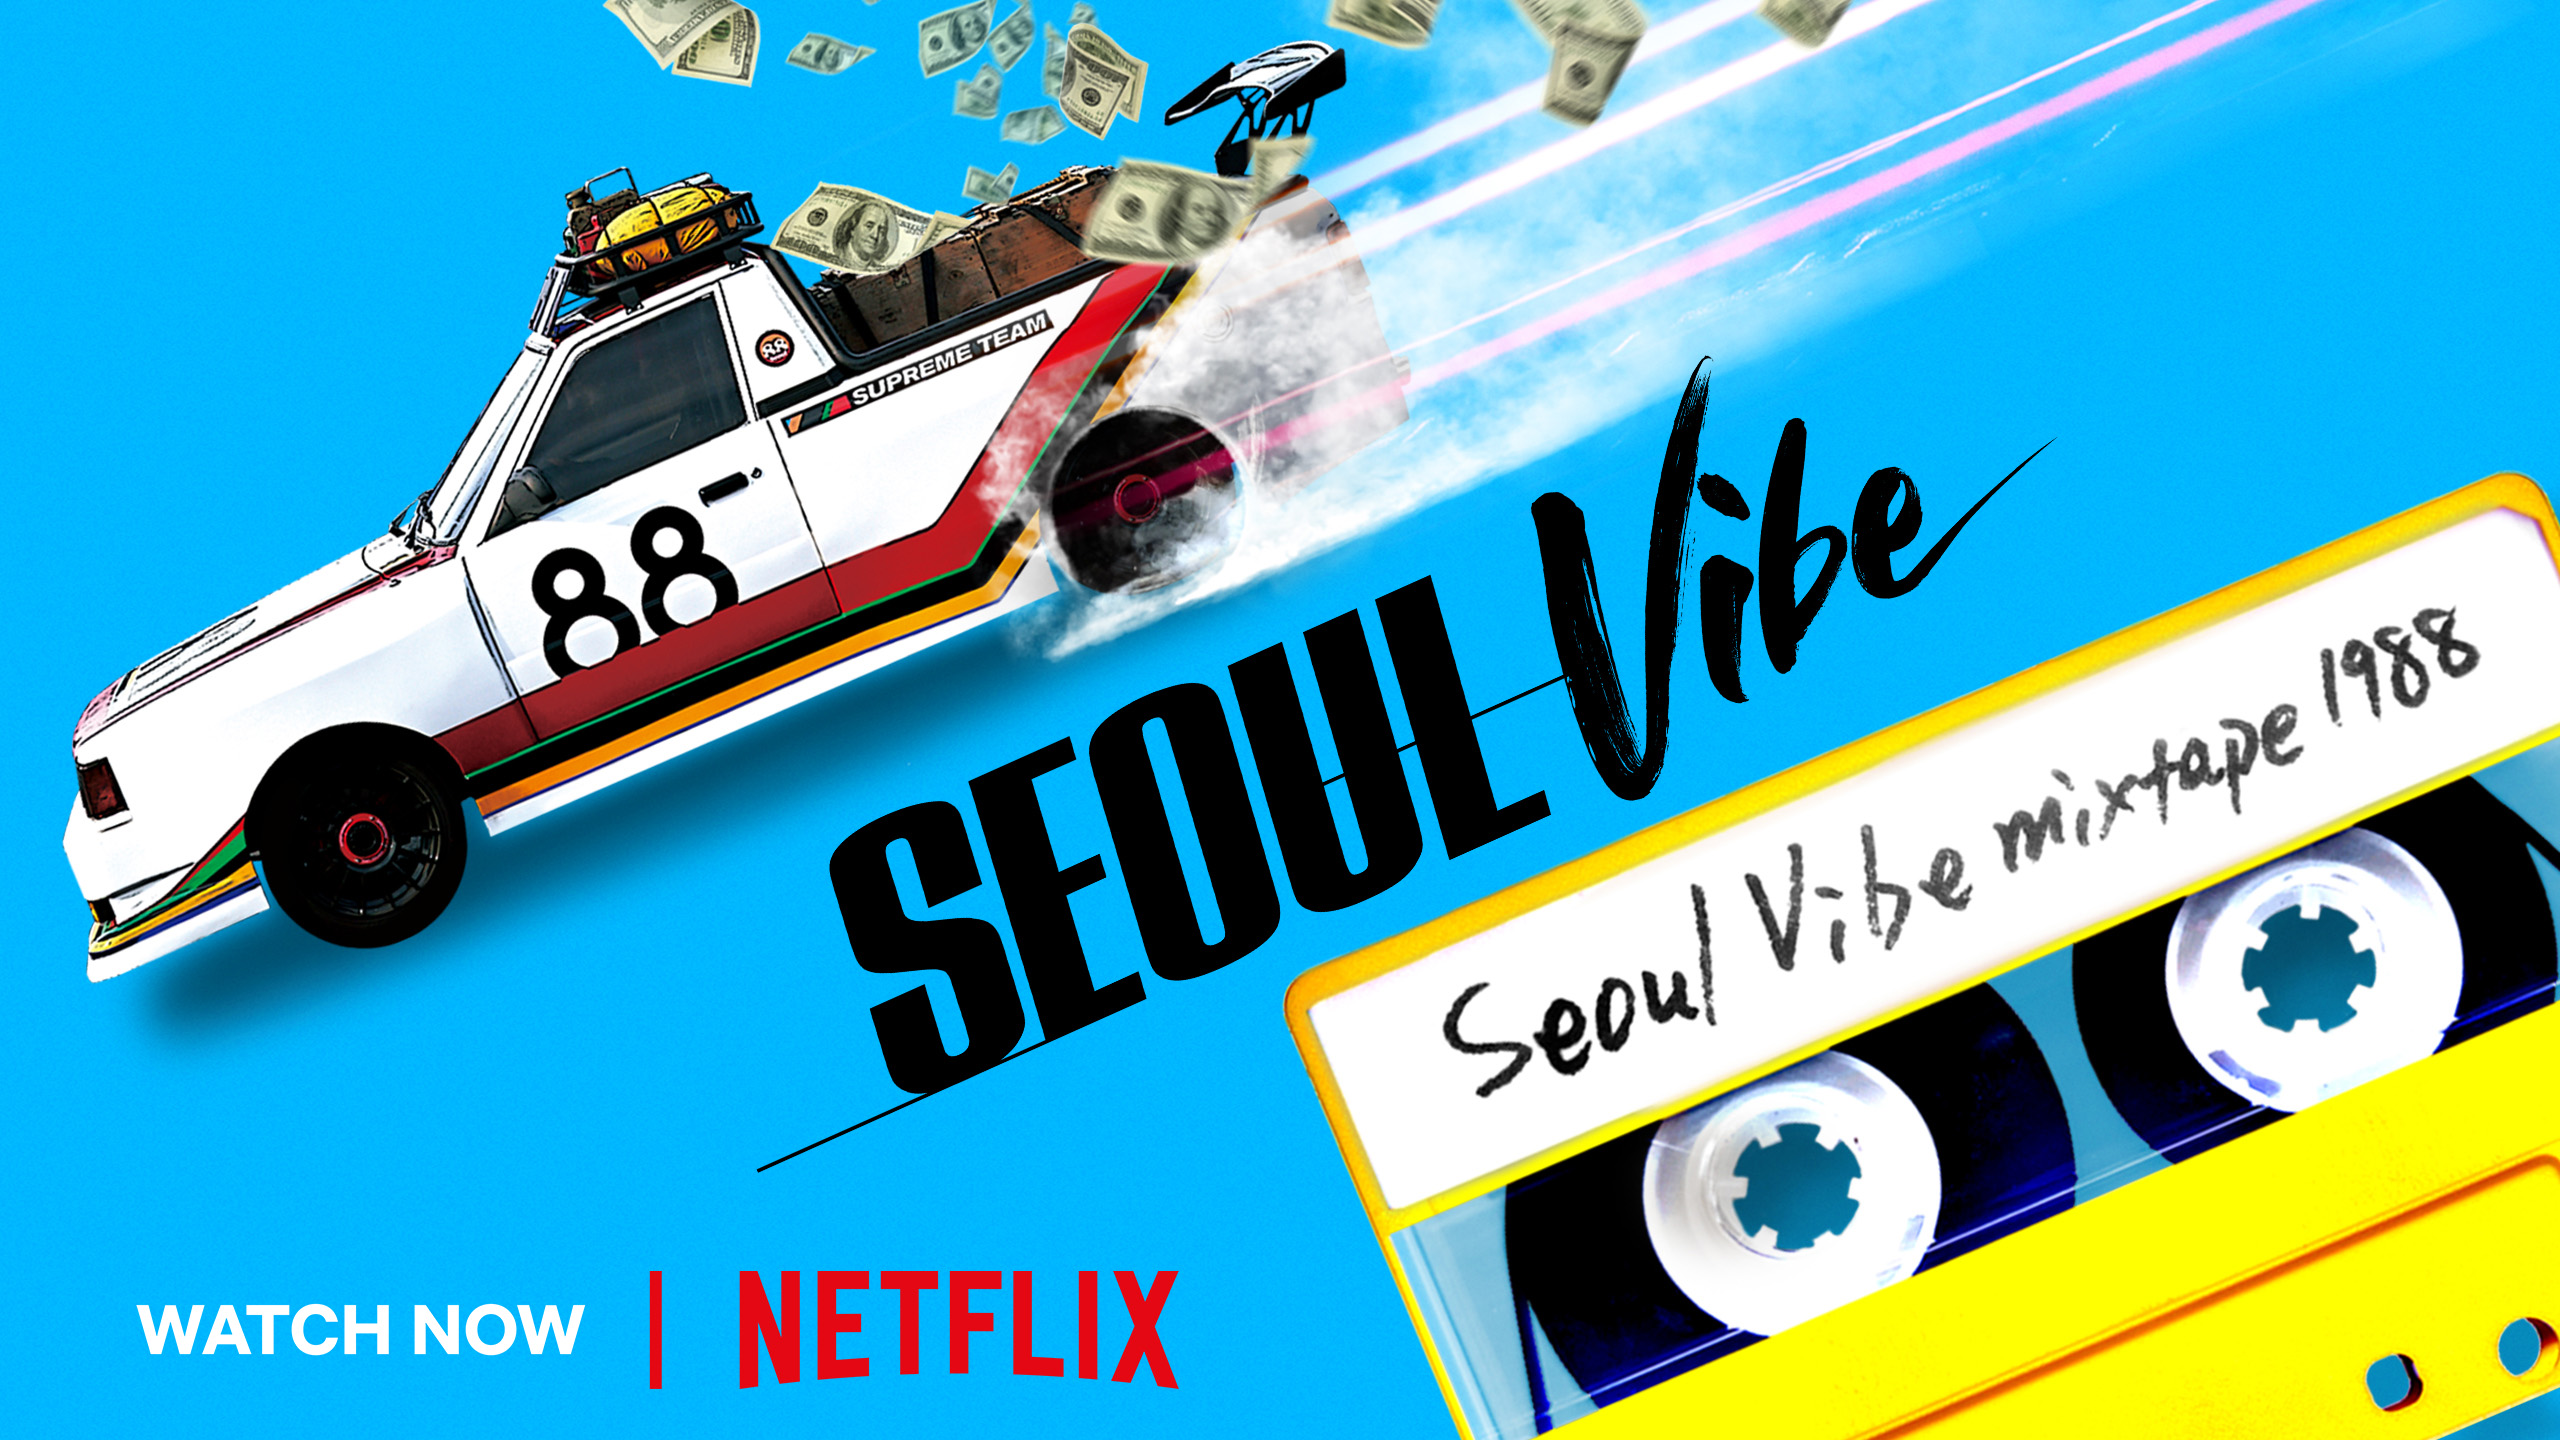 Los modelos retro de Hyundai animan la nueva película “Seoul Vibe” de Netflix